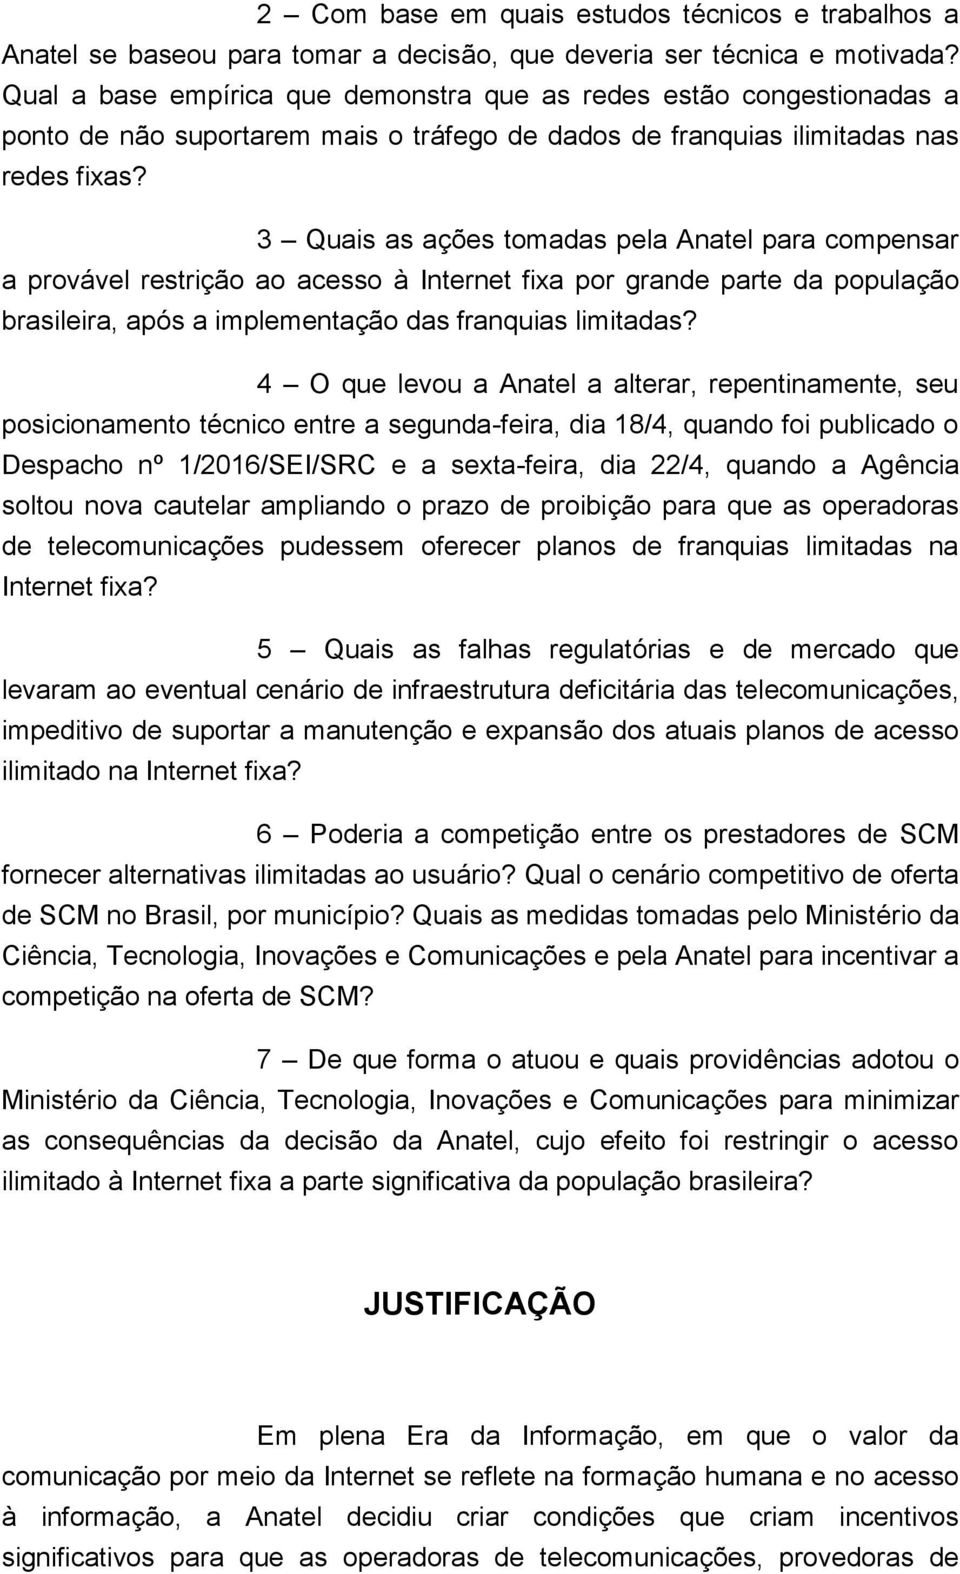 3 Quais as ações tomadas pela Anatel para compensar a provável restrição ao acesso à Internet fixa por grande parte da população brasileira, após a implementação das franquias limitadas?